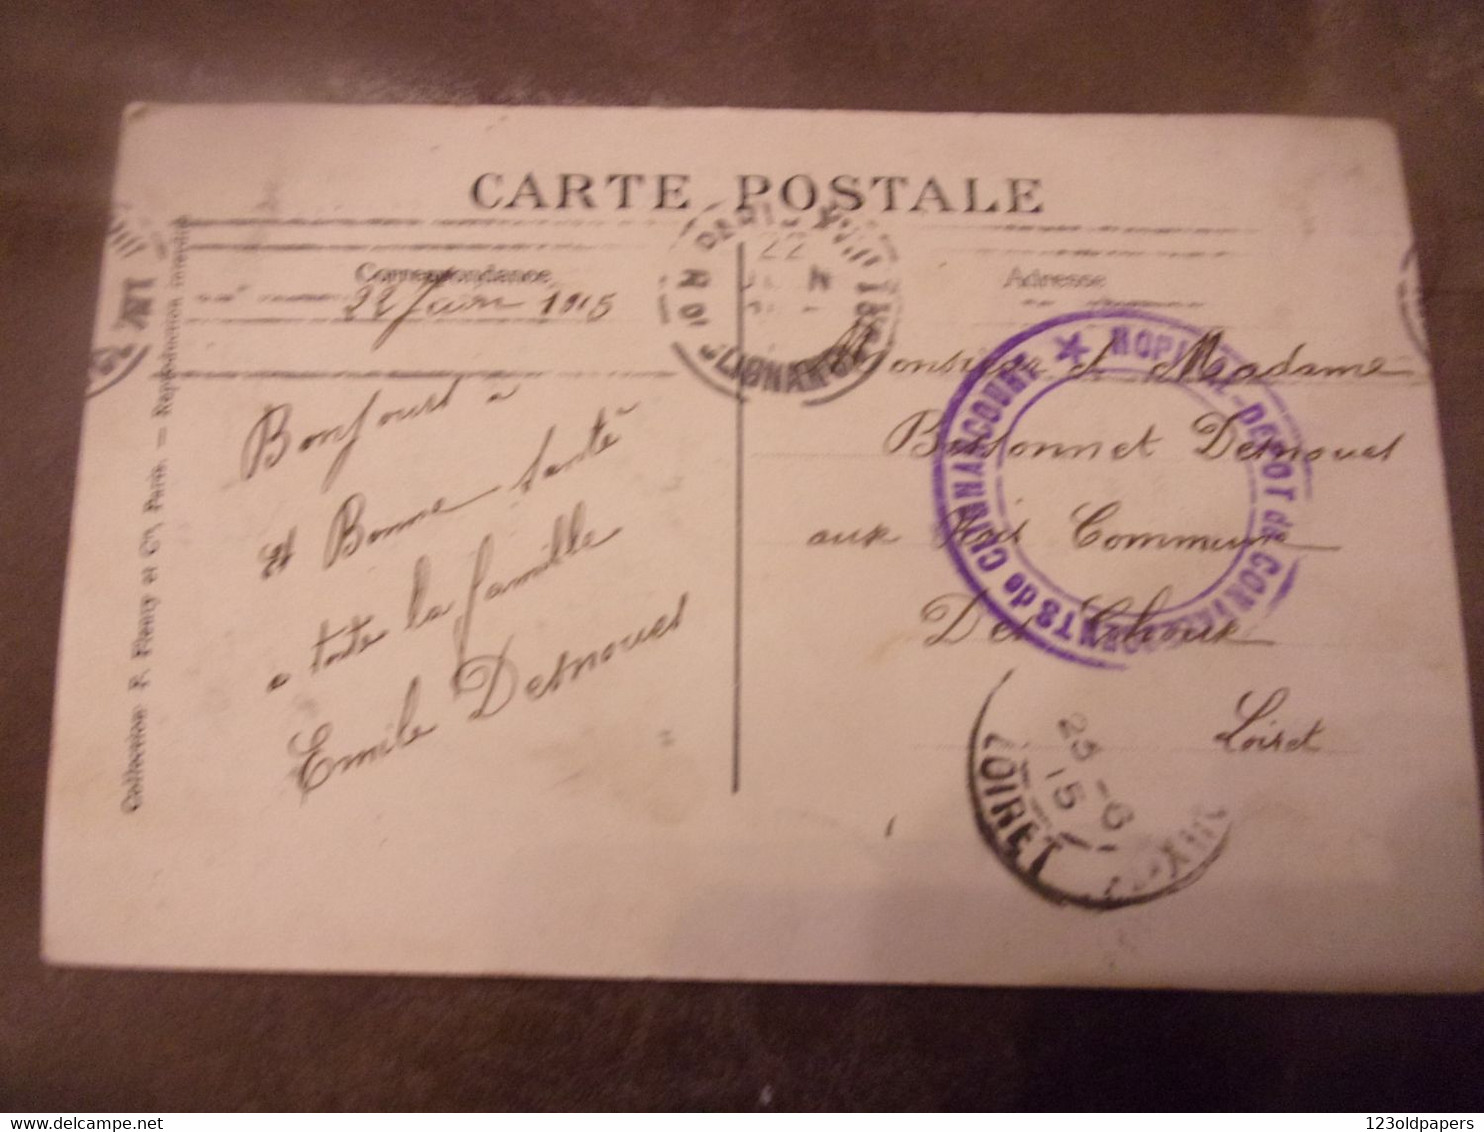 PARIS  NOUVEAU BASTION DU 76 EME DE LIGNE BOULEVARD NEY 1915 HOPITAL CACHET CLIGANCOURT - Arrondissement: 18